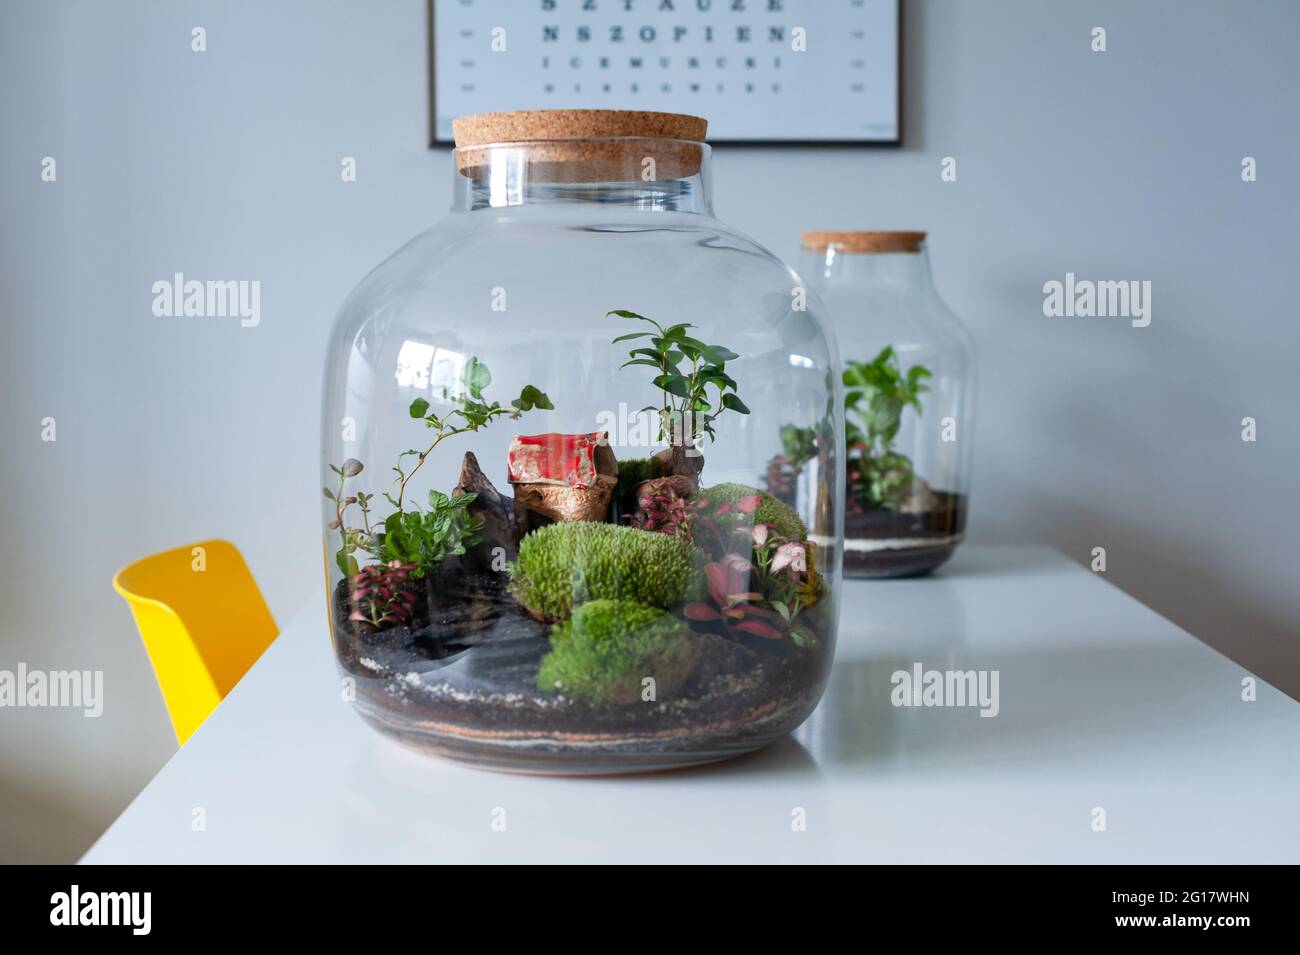 Terrarium mit Pflanzen - Ginseng ficus, Miniaturhaus, Miniaturwelt. Ein Wald  aus Glas in Gesellschaft von Schnittblumen auf dem Tisch vor einem SC  Stockfotografie - Alamy